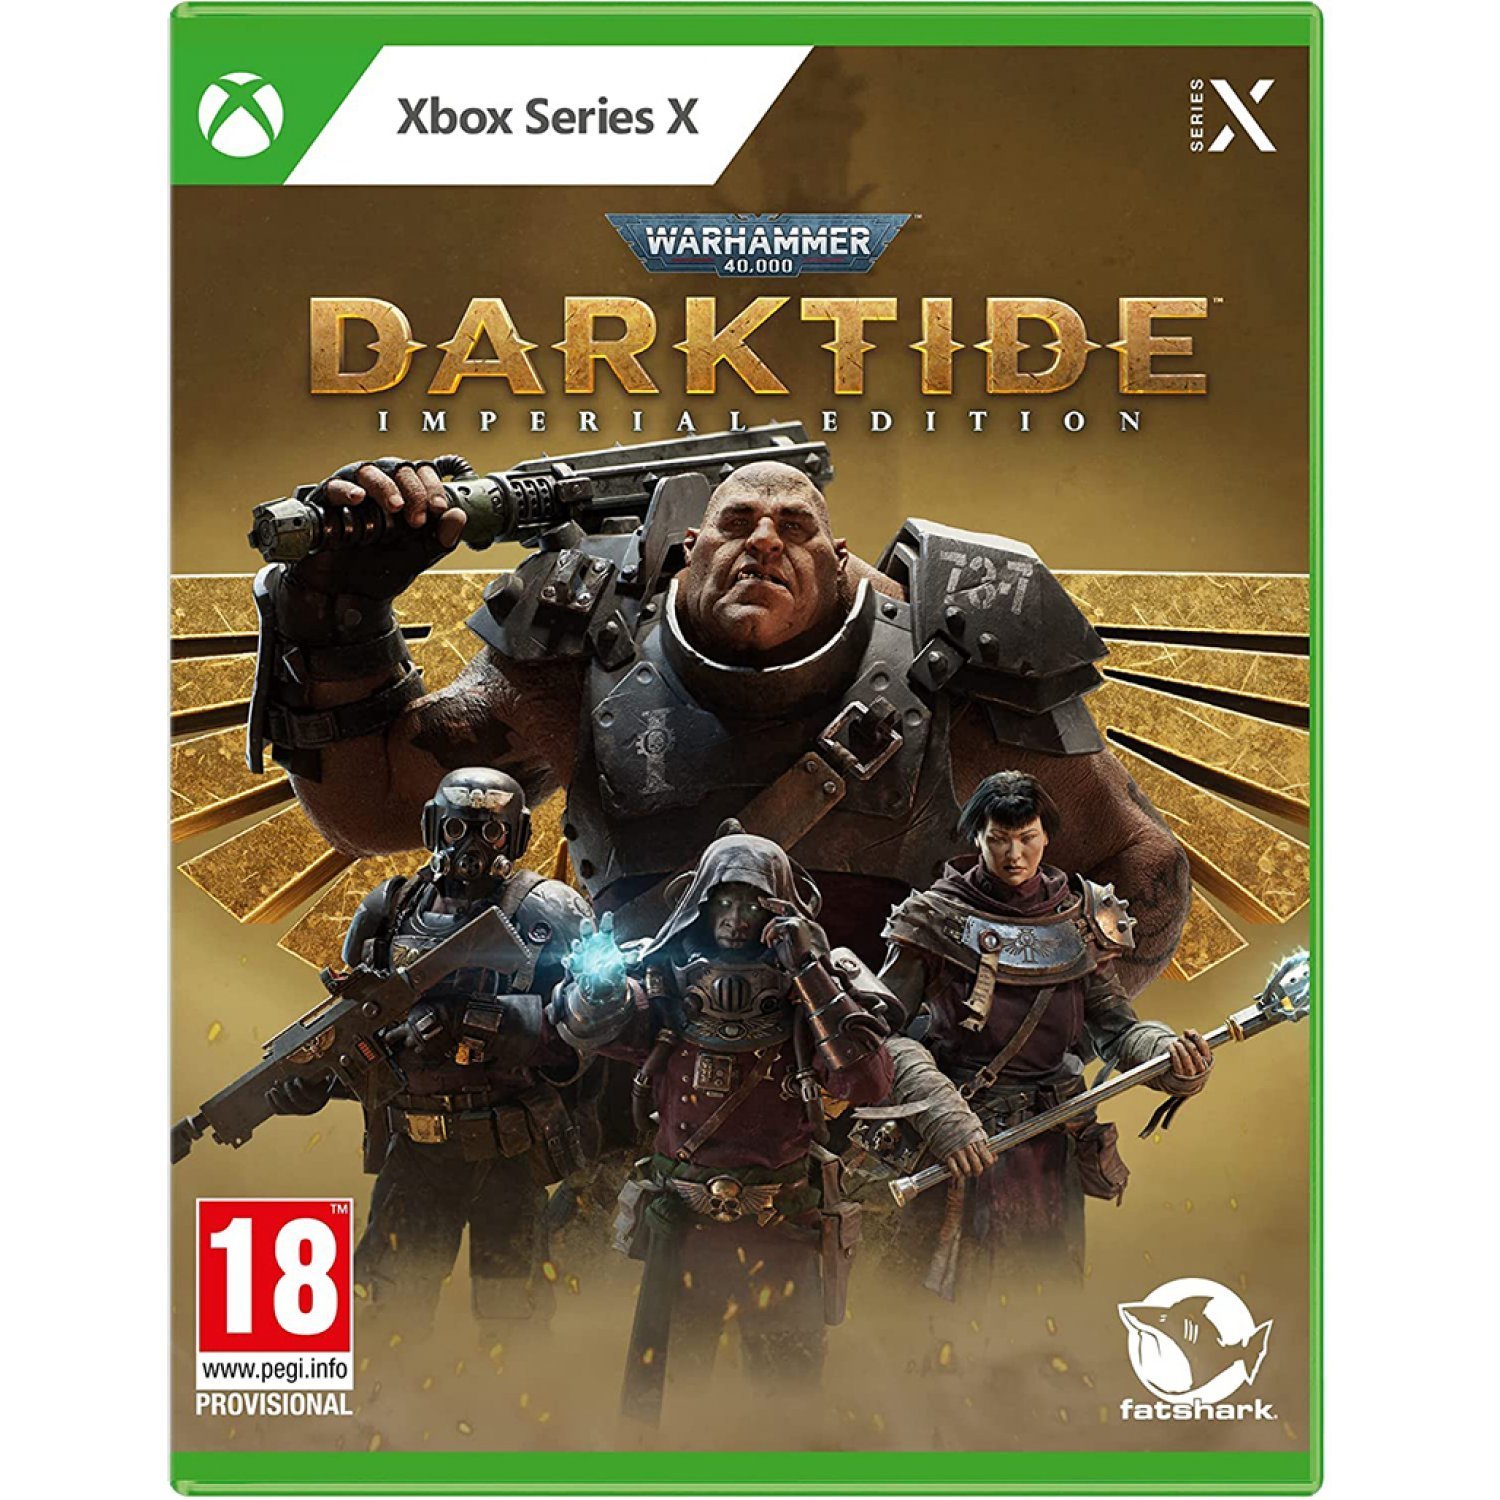 Warhammer 40,000: Darktide (Imperial Edition) von Fatshark